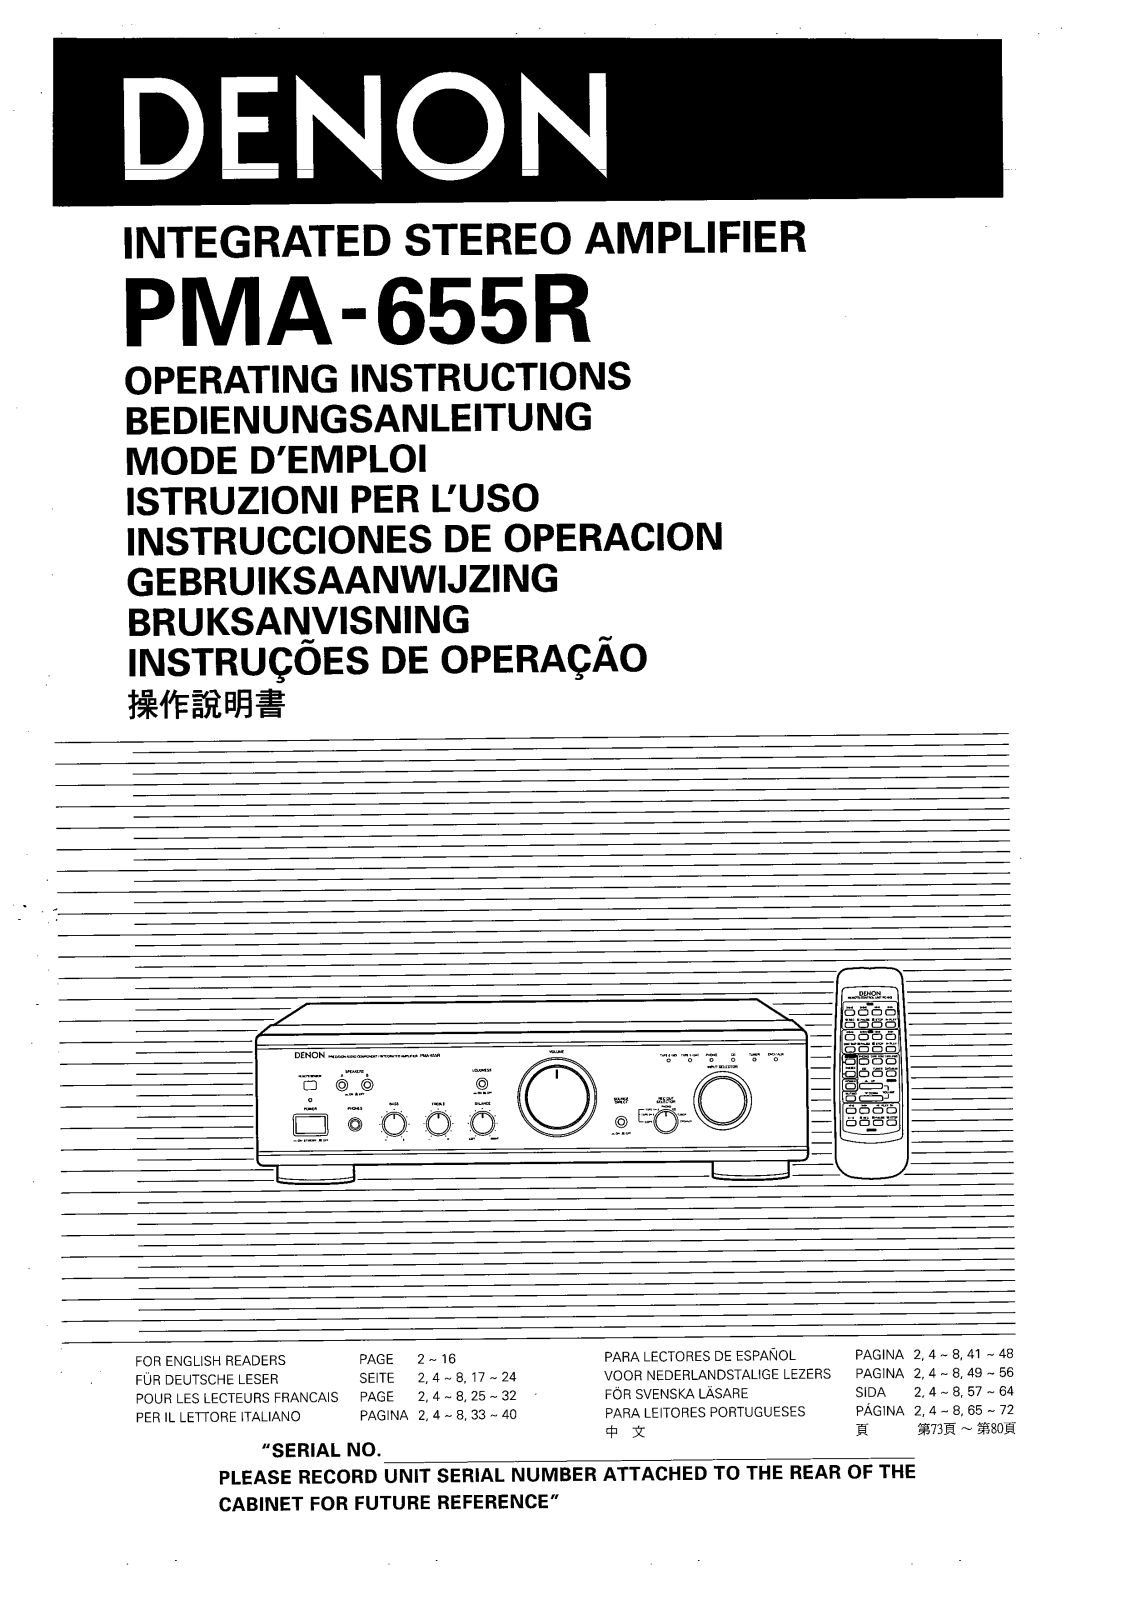 DENON PMA-655 User Manual